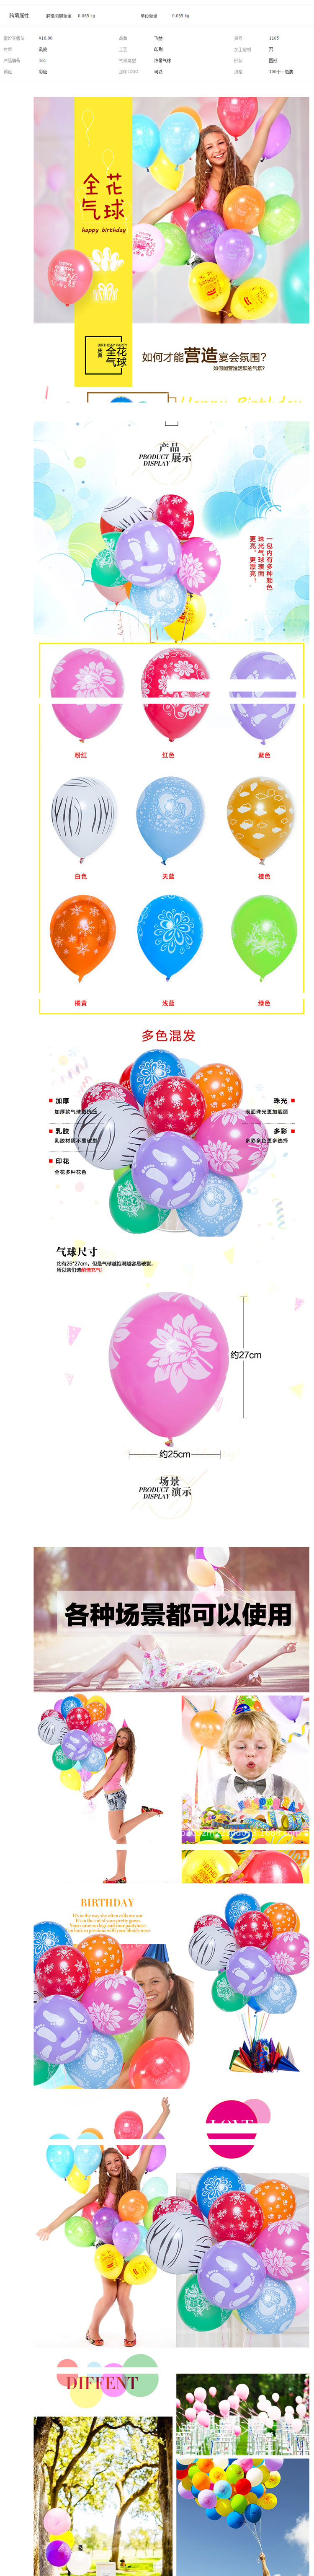 装饰印气球_122